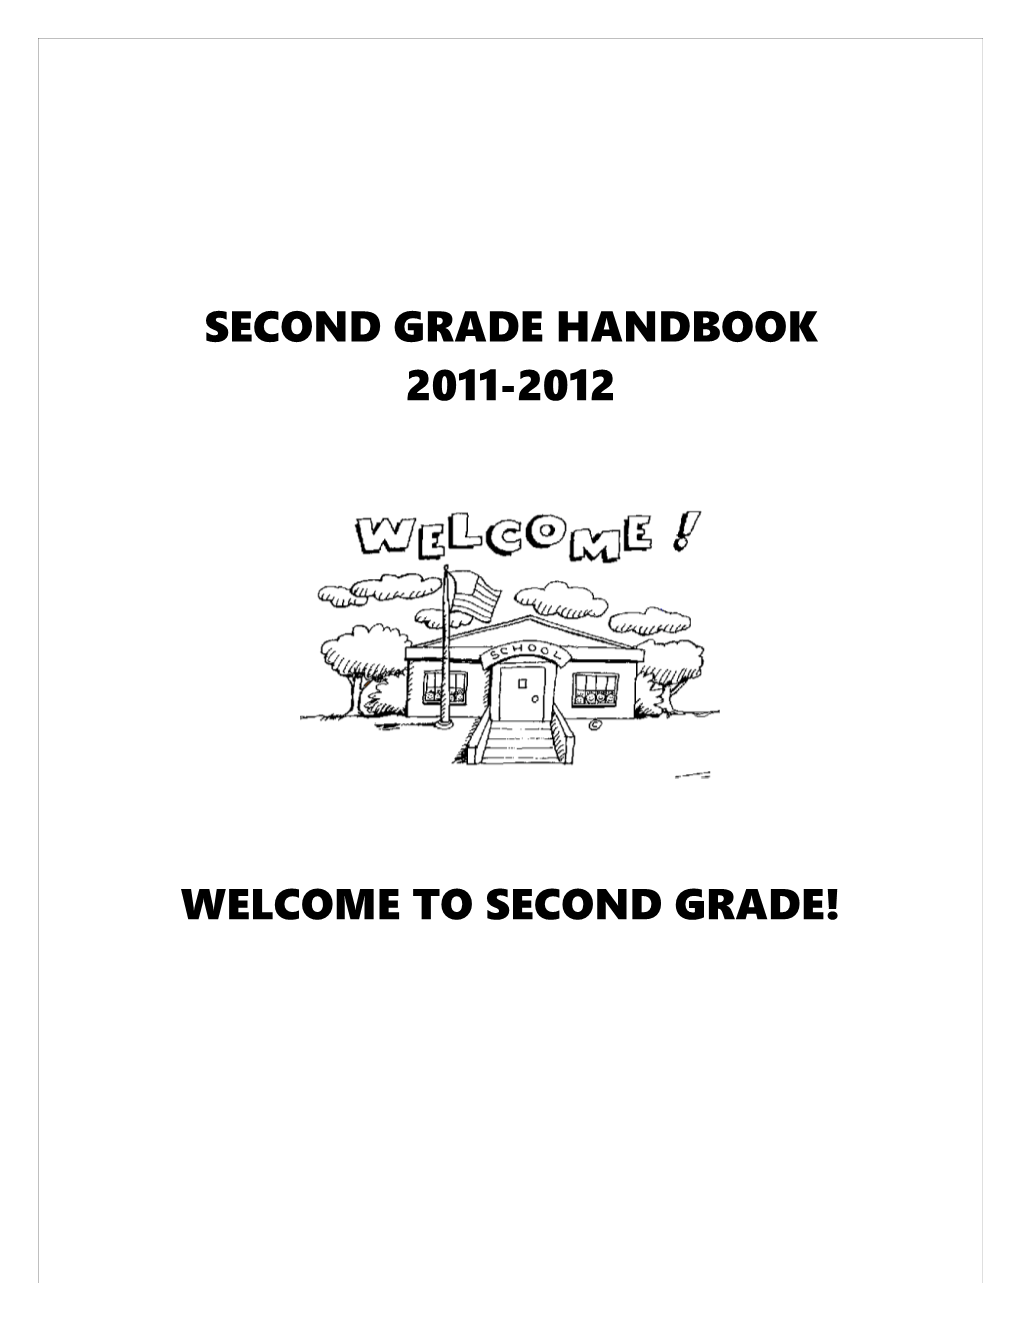 Second Grade Handbook